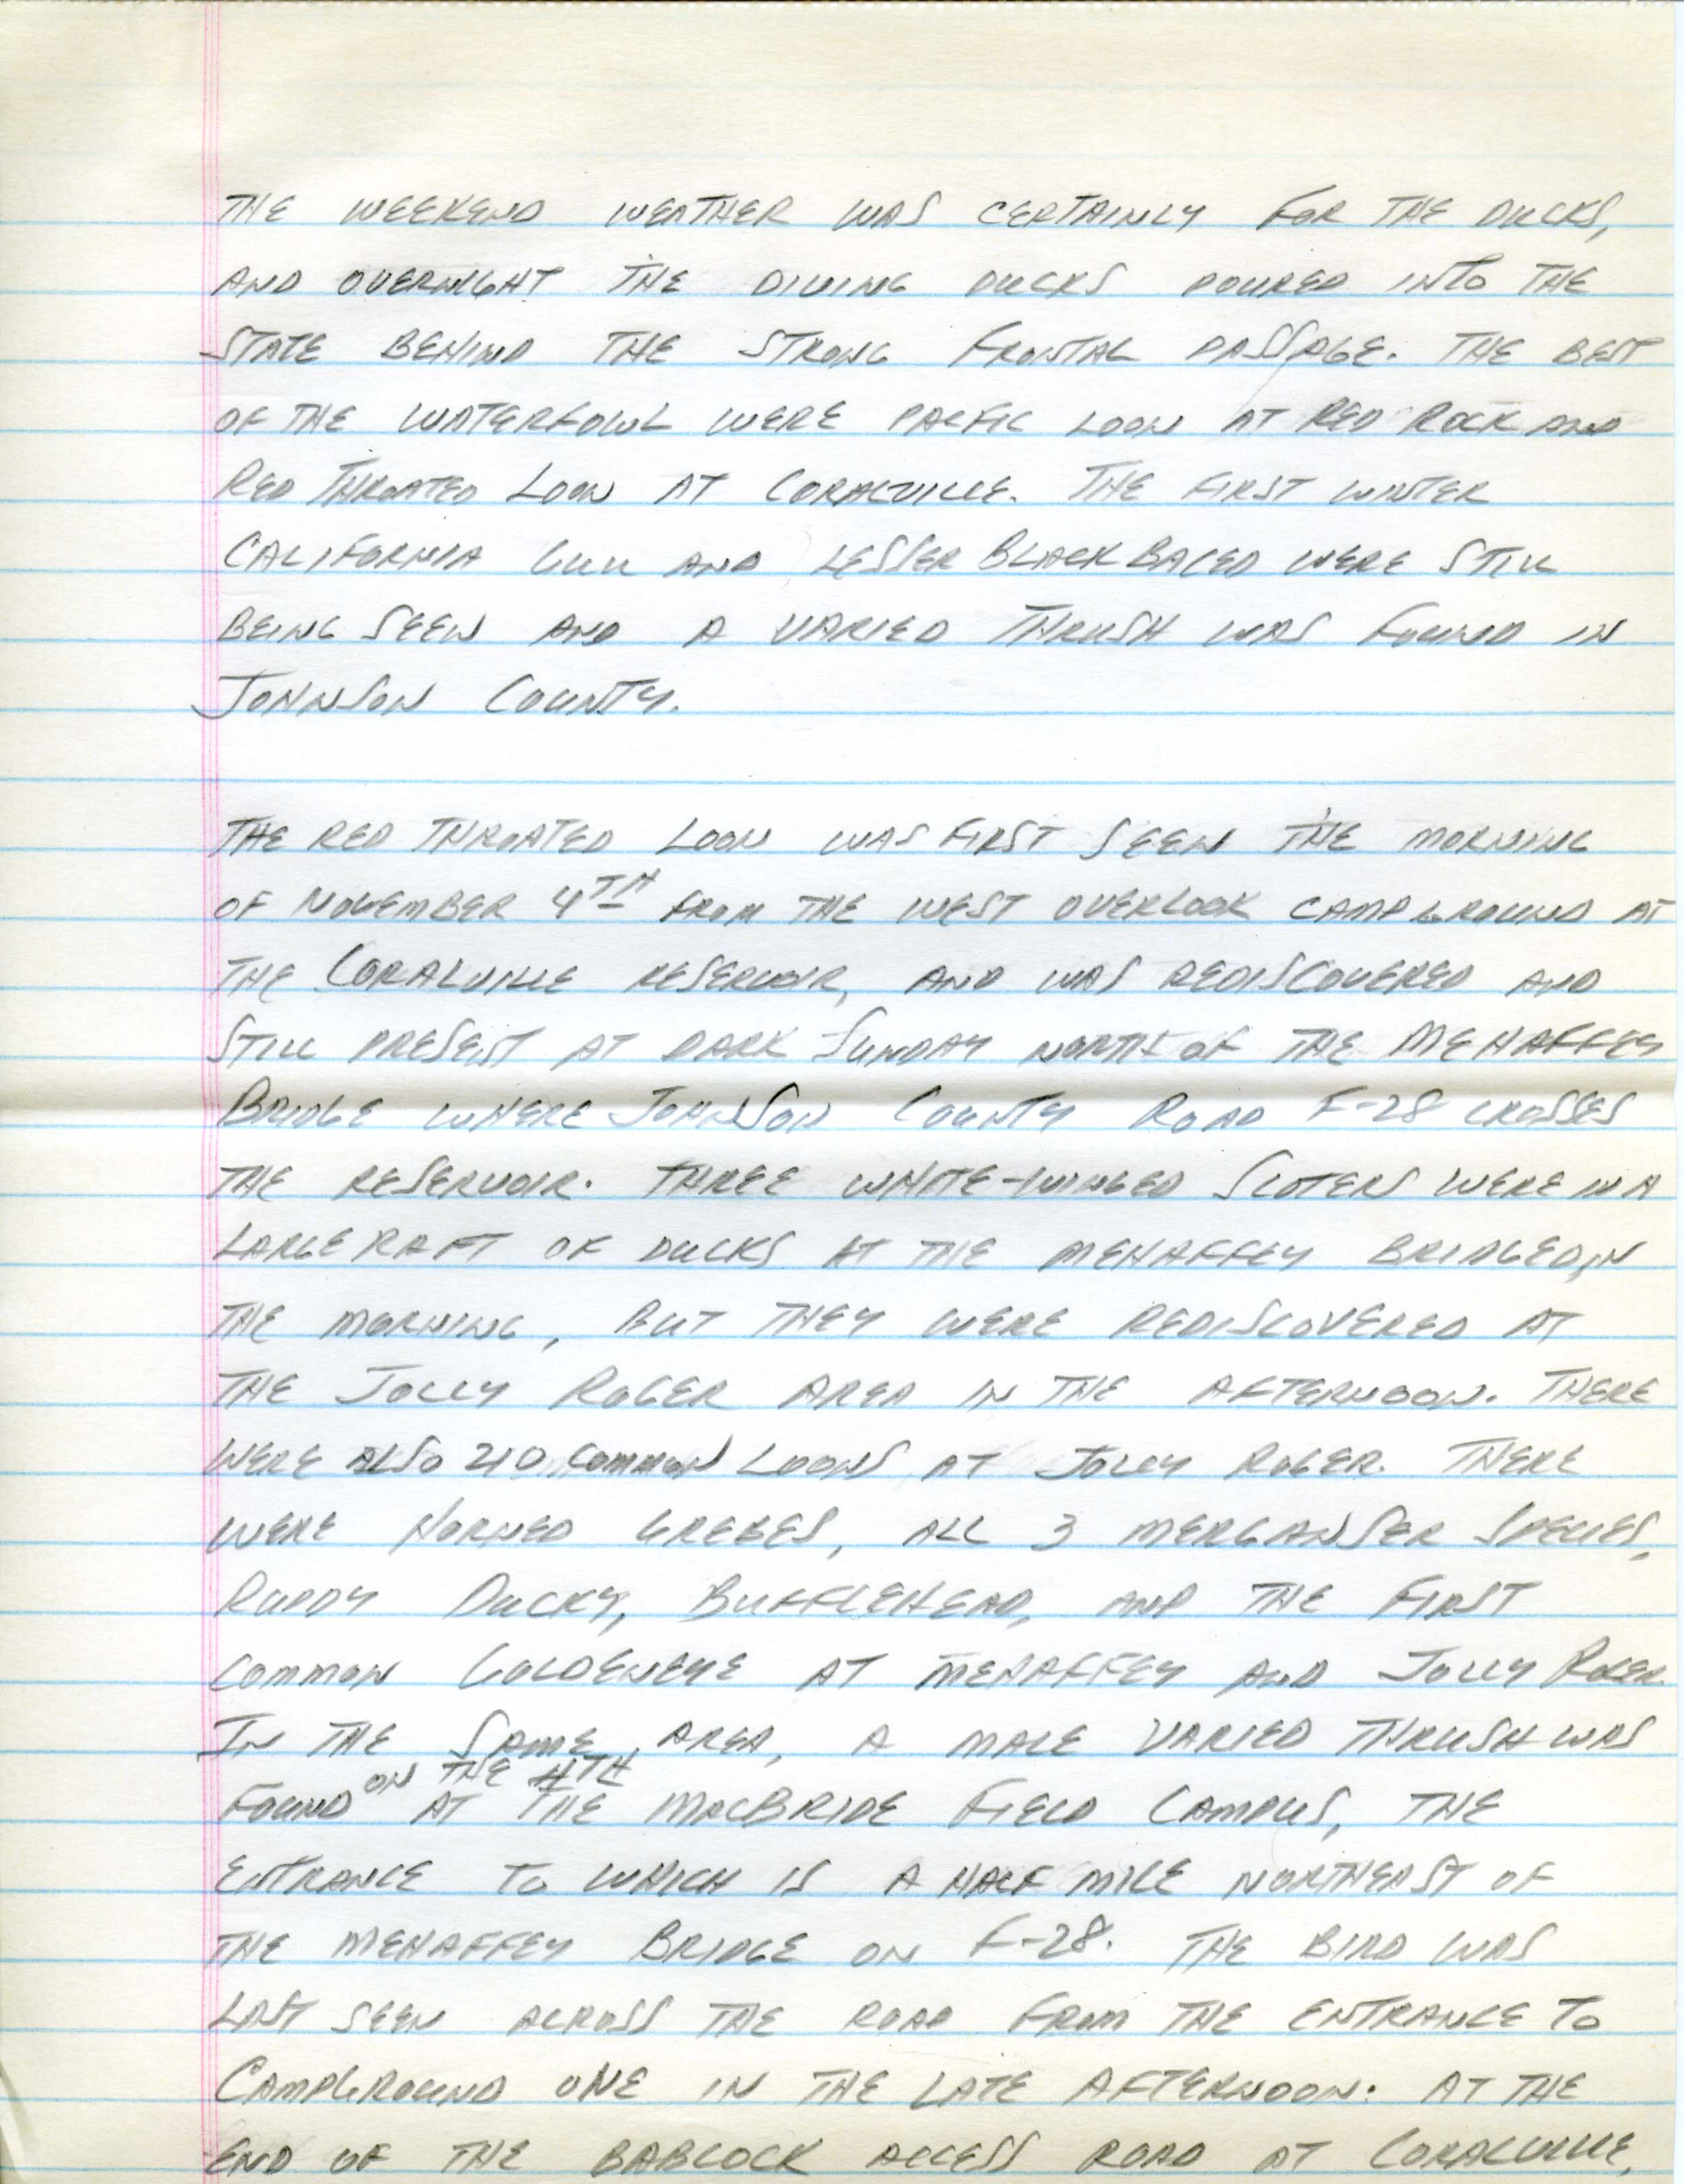 Iowa Birdline update, November 5, 1990, notes